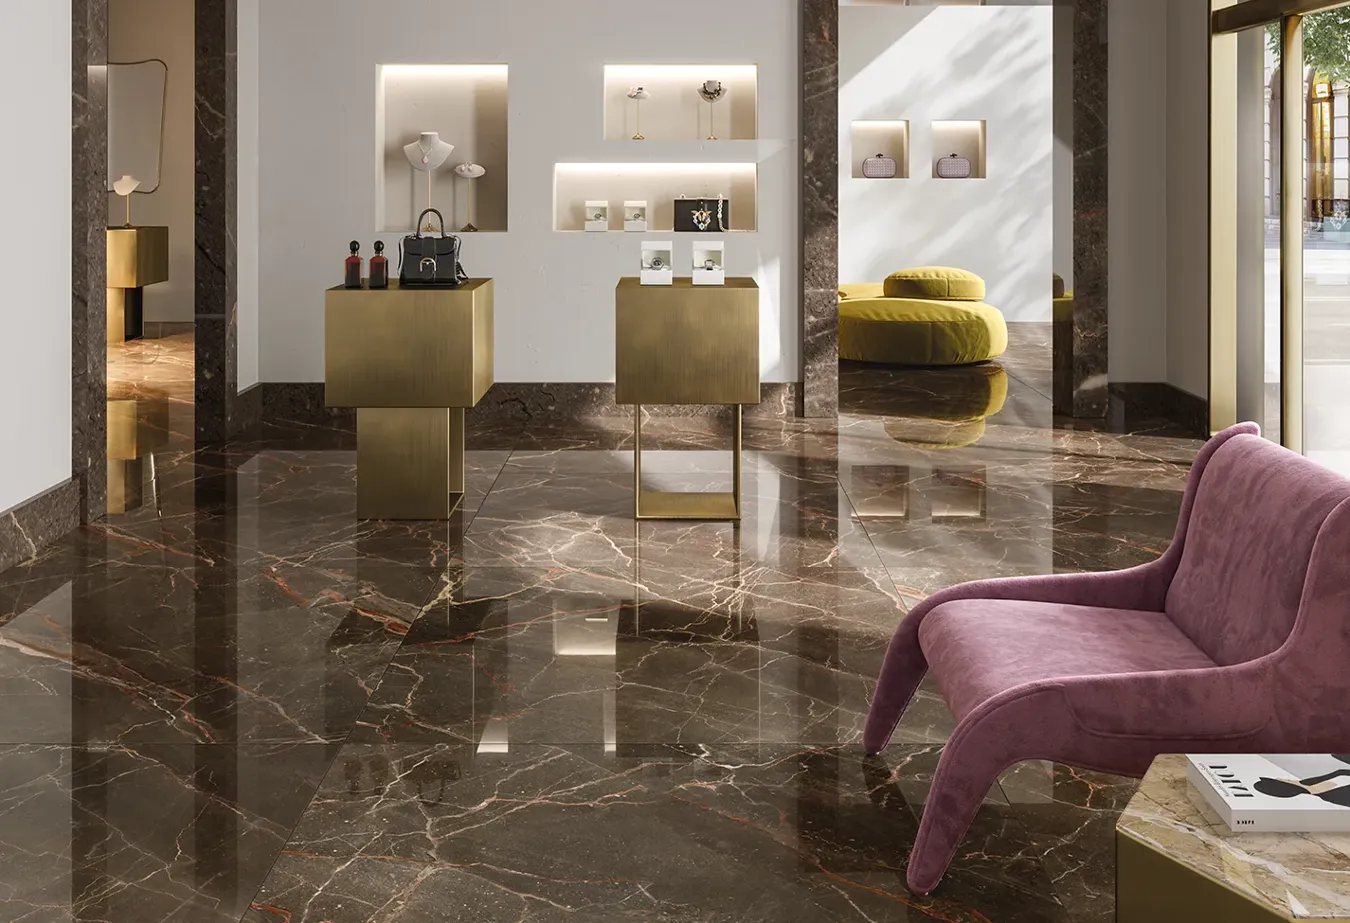 Feinsteinzeugboden in Marmoroptik Ombra Moca aus der 9cento Kollektion, kombiniert mit Bronze-Möbeln und rosa Samtdetails.